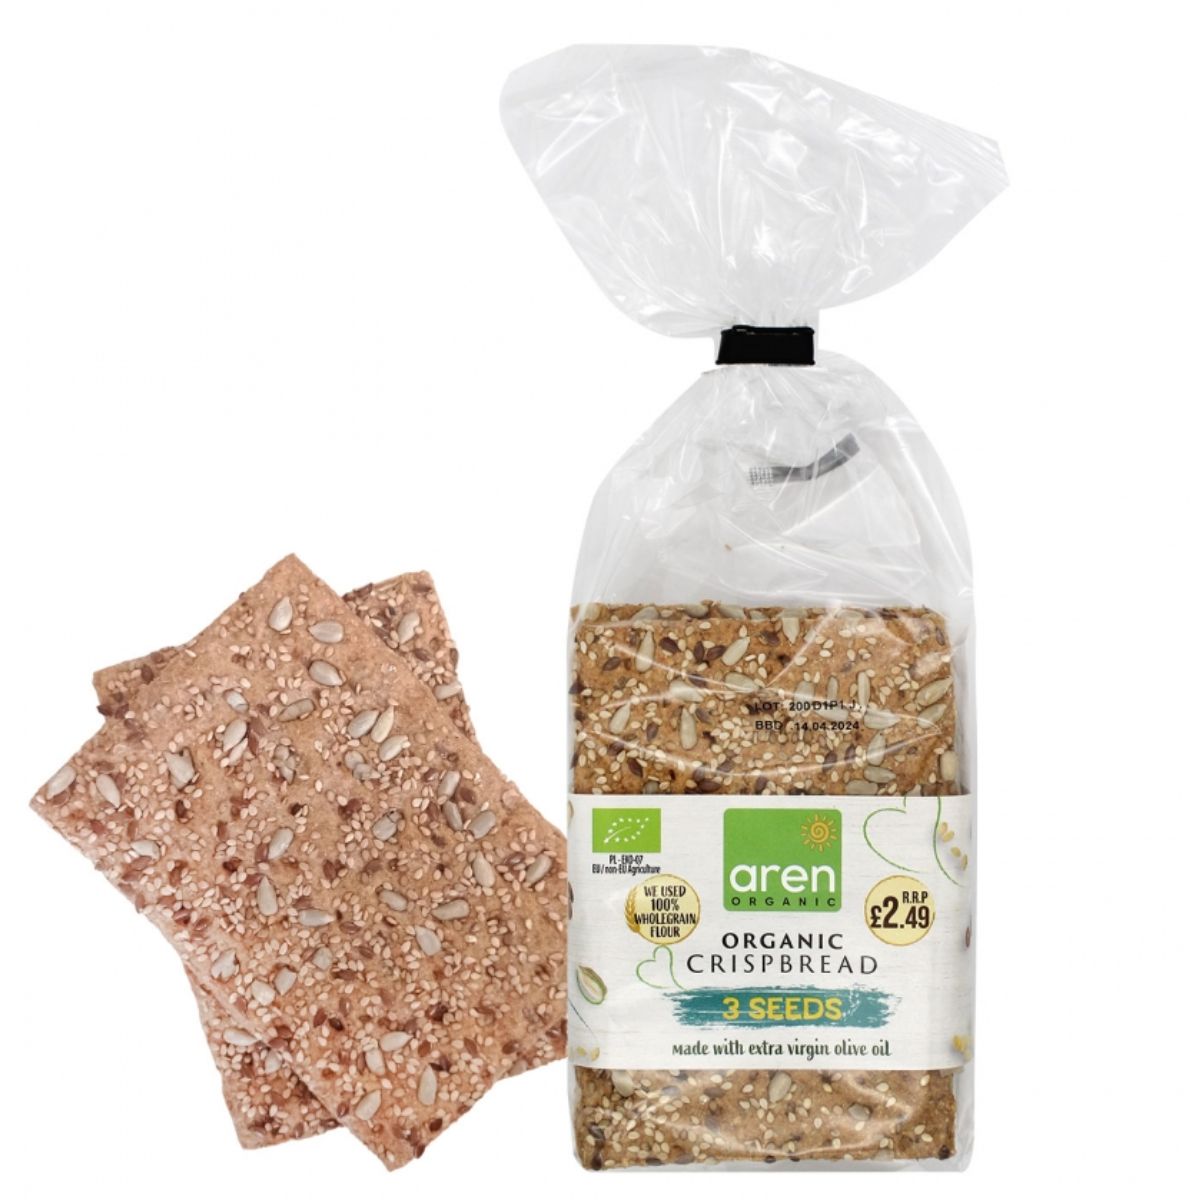 A bag of Aren - Organic-Crispbread 3 Seeds -200g next to a bag of oats.